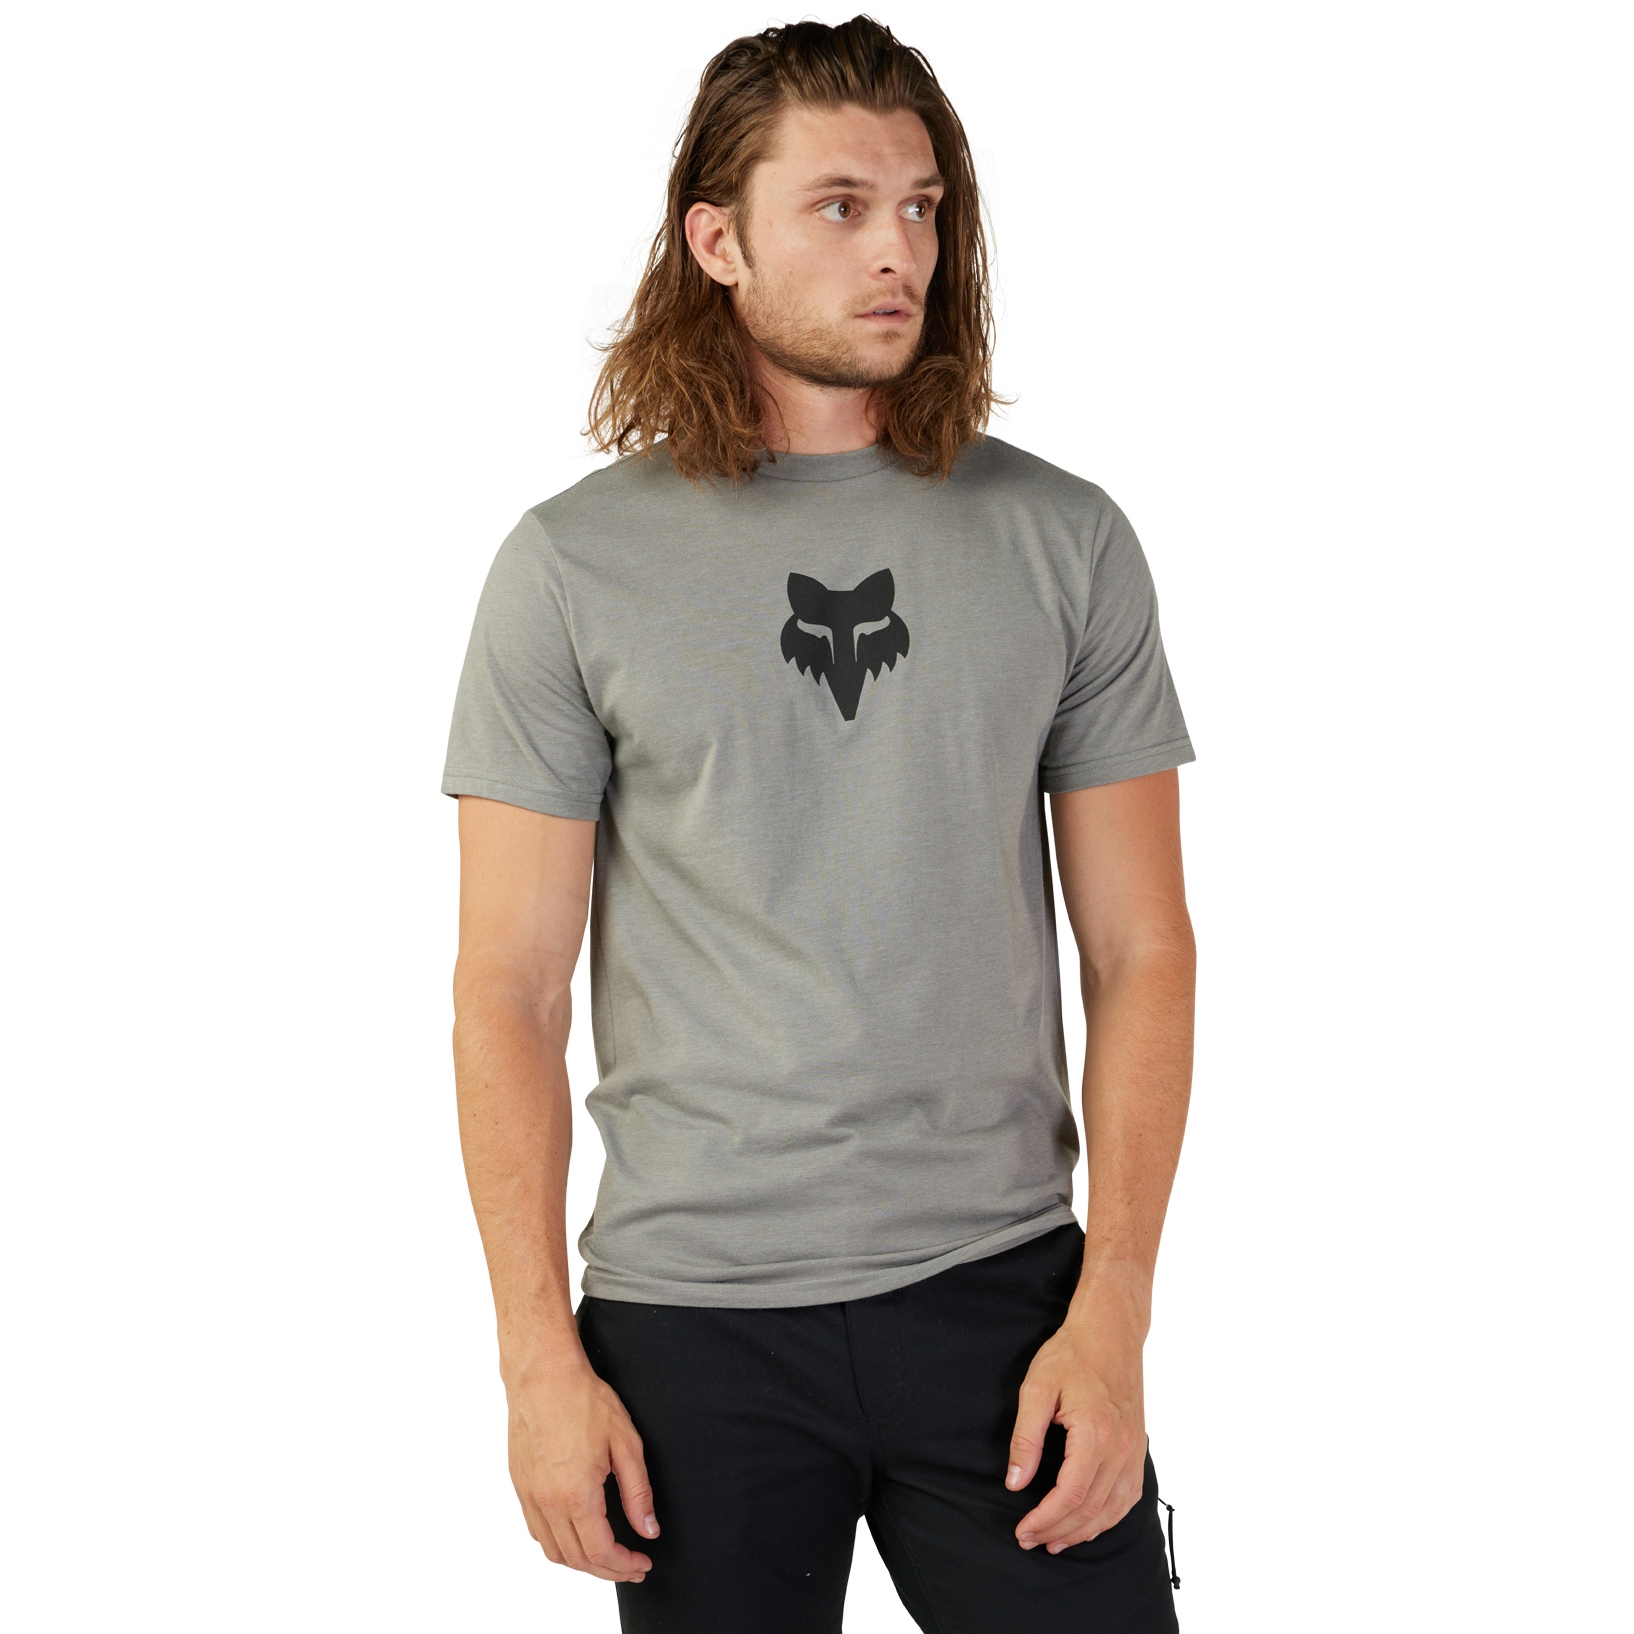 Productfoto van FOX Head Premium Sshirt Heren - heather graphite